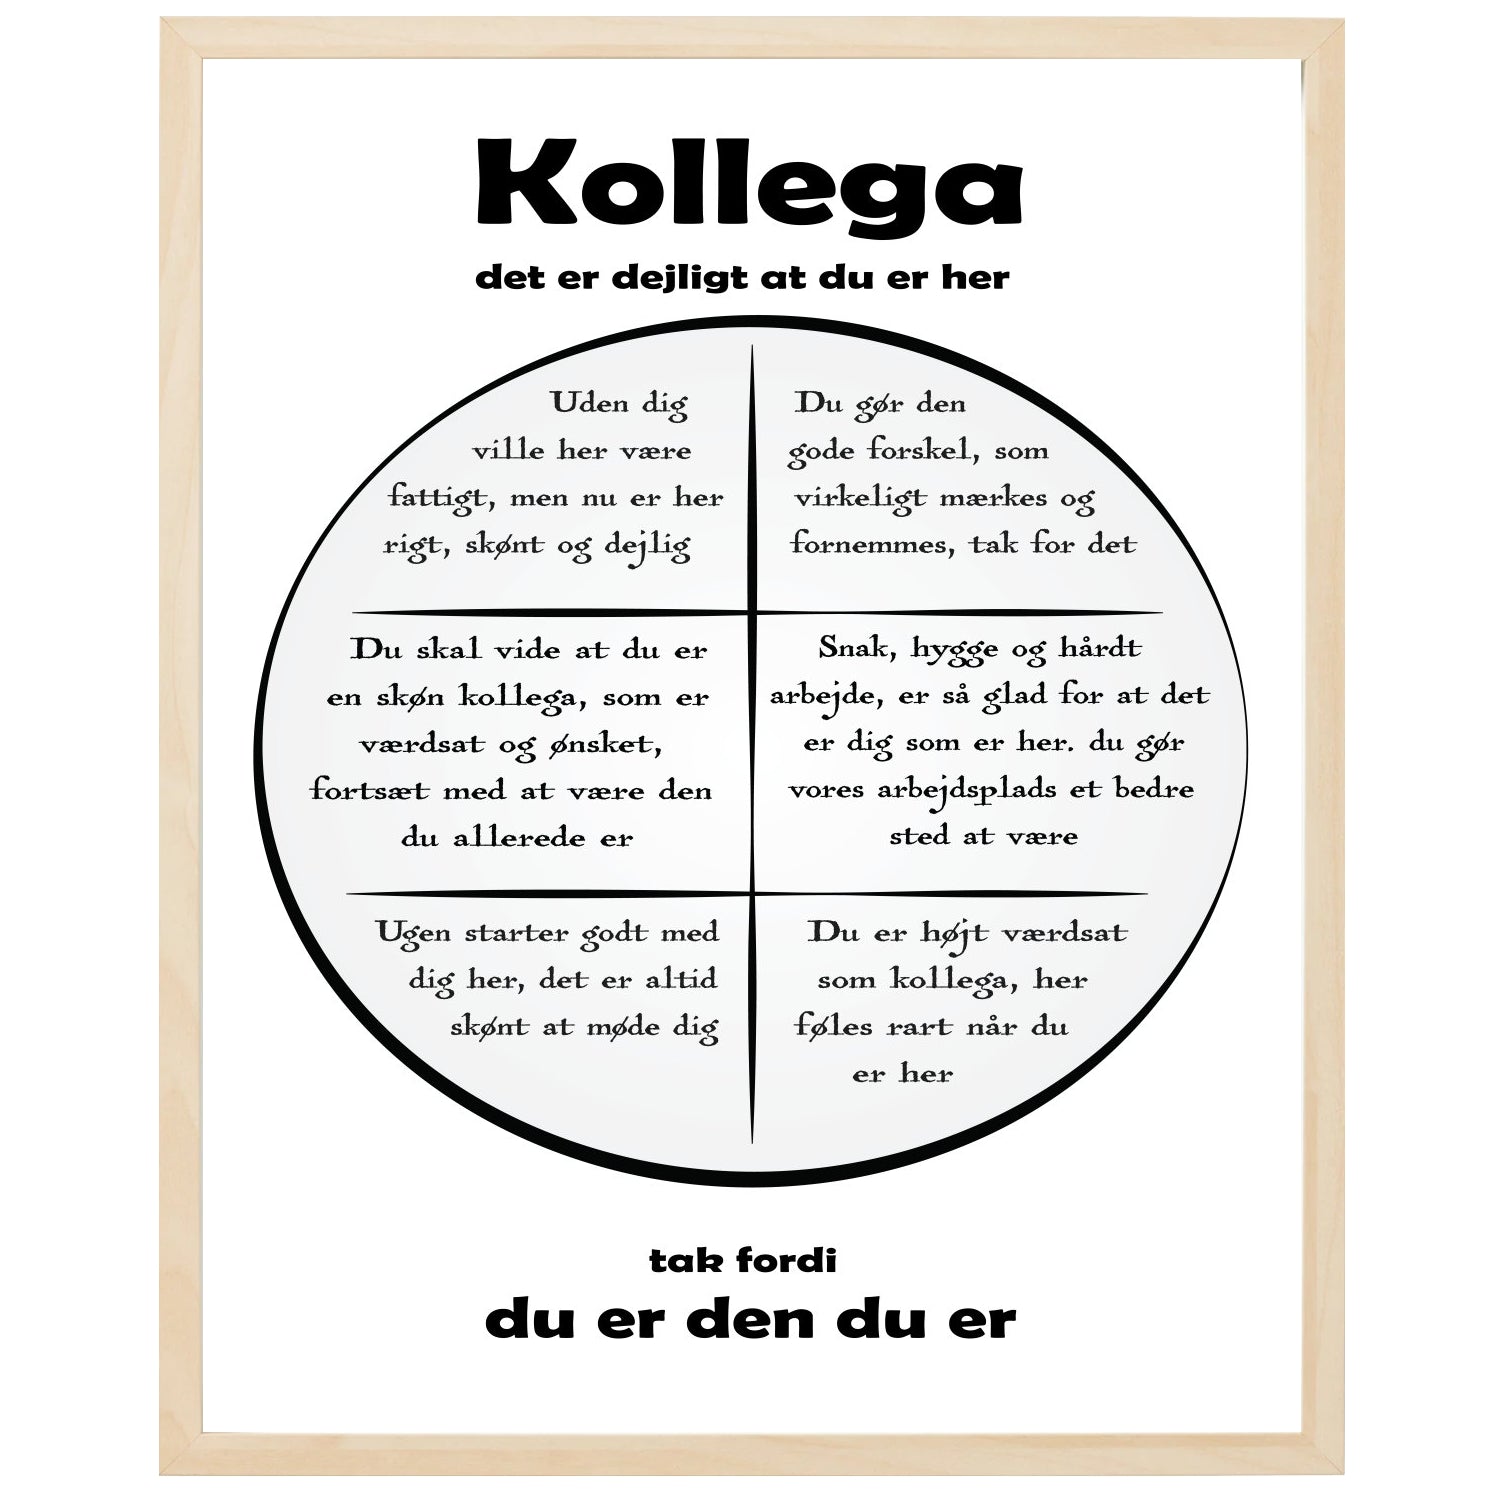 En plakat med overskriften Kollega, en rustik cirkel og indeni cirklen mange positive sætninger som beskriver en Kollega